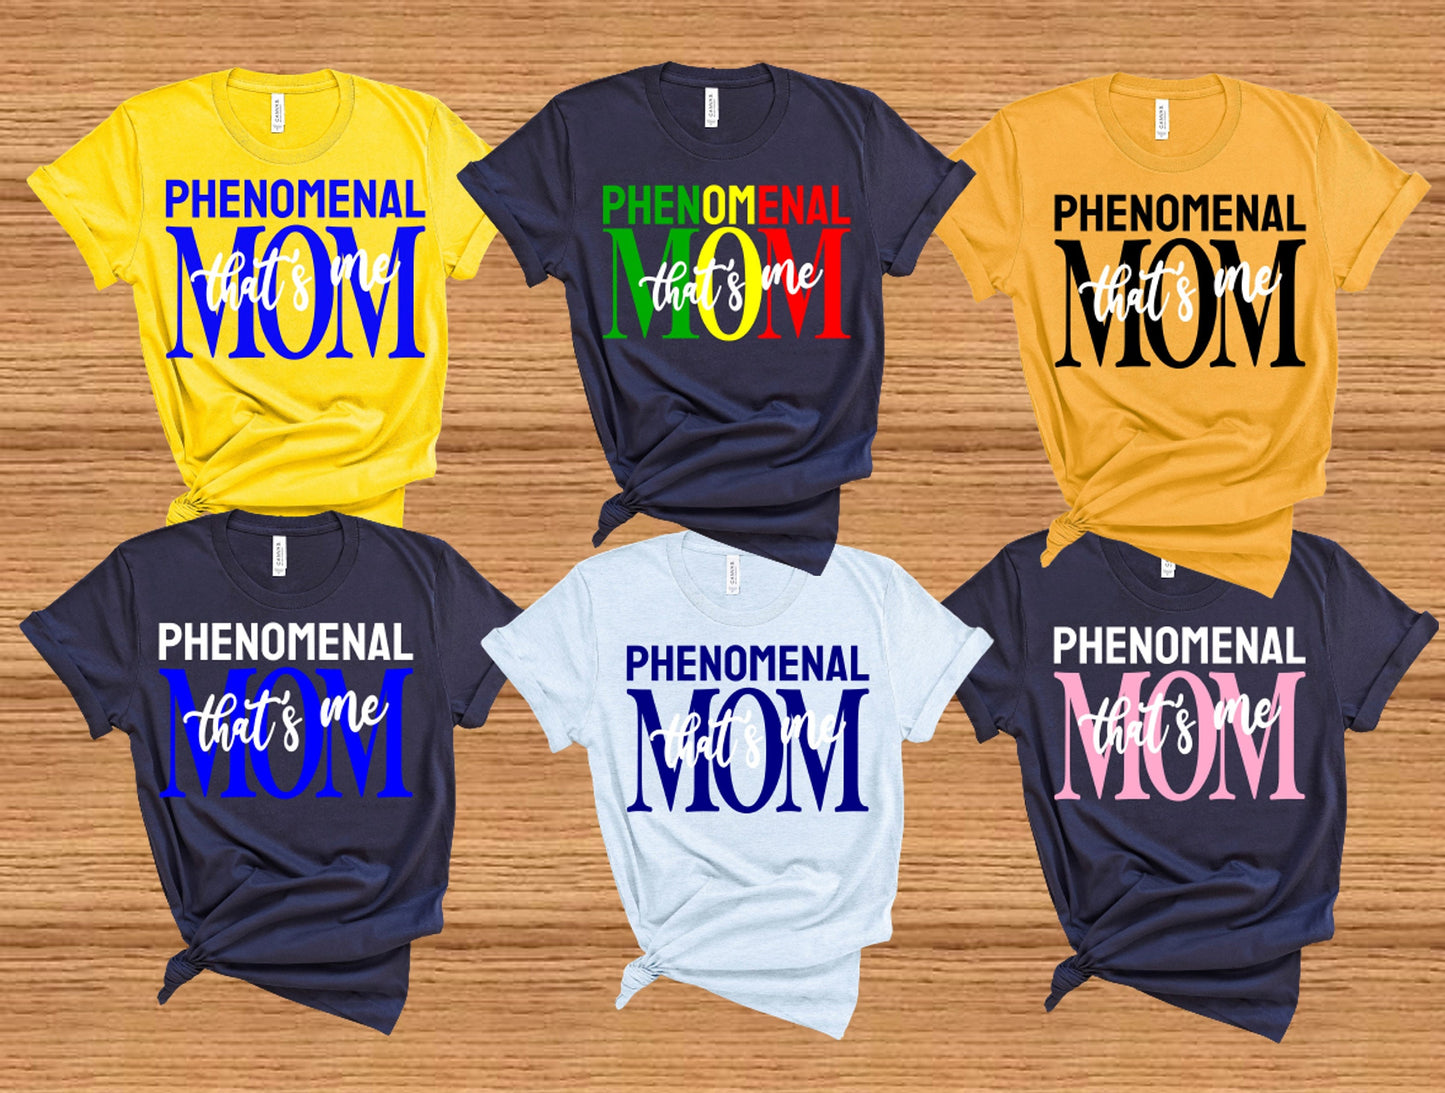 PHENOMENAL MOM TShirts Phenomenal Mom Shirt Mother's Day Gift Ideas Phenomenal Mom Shirts MOM Shirt Cute Shirt Gift Ideas Mothers Day Shirt